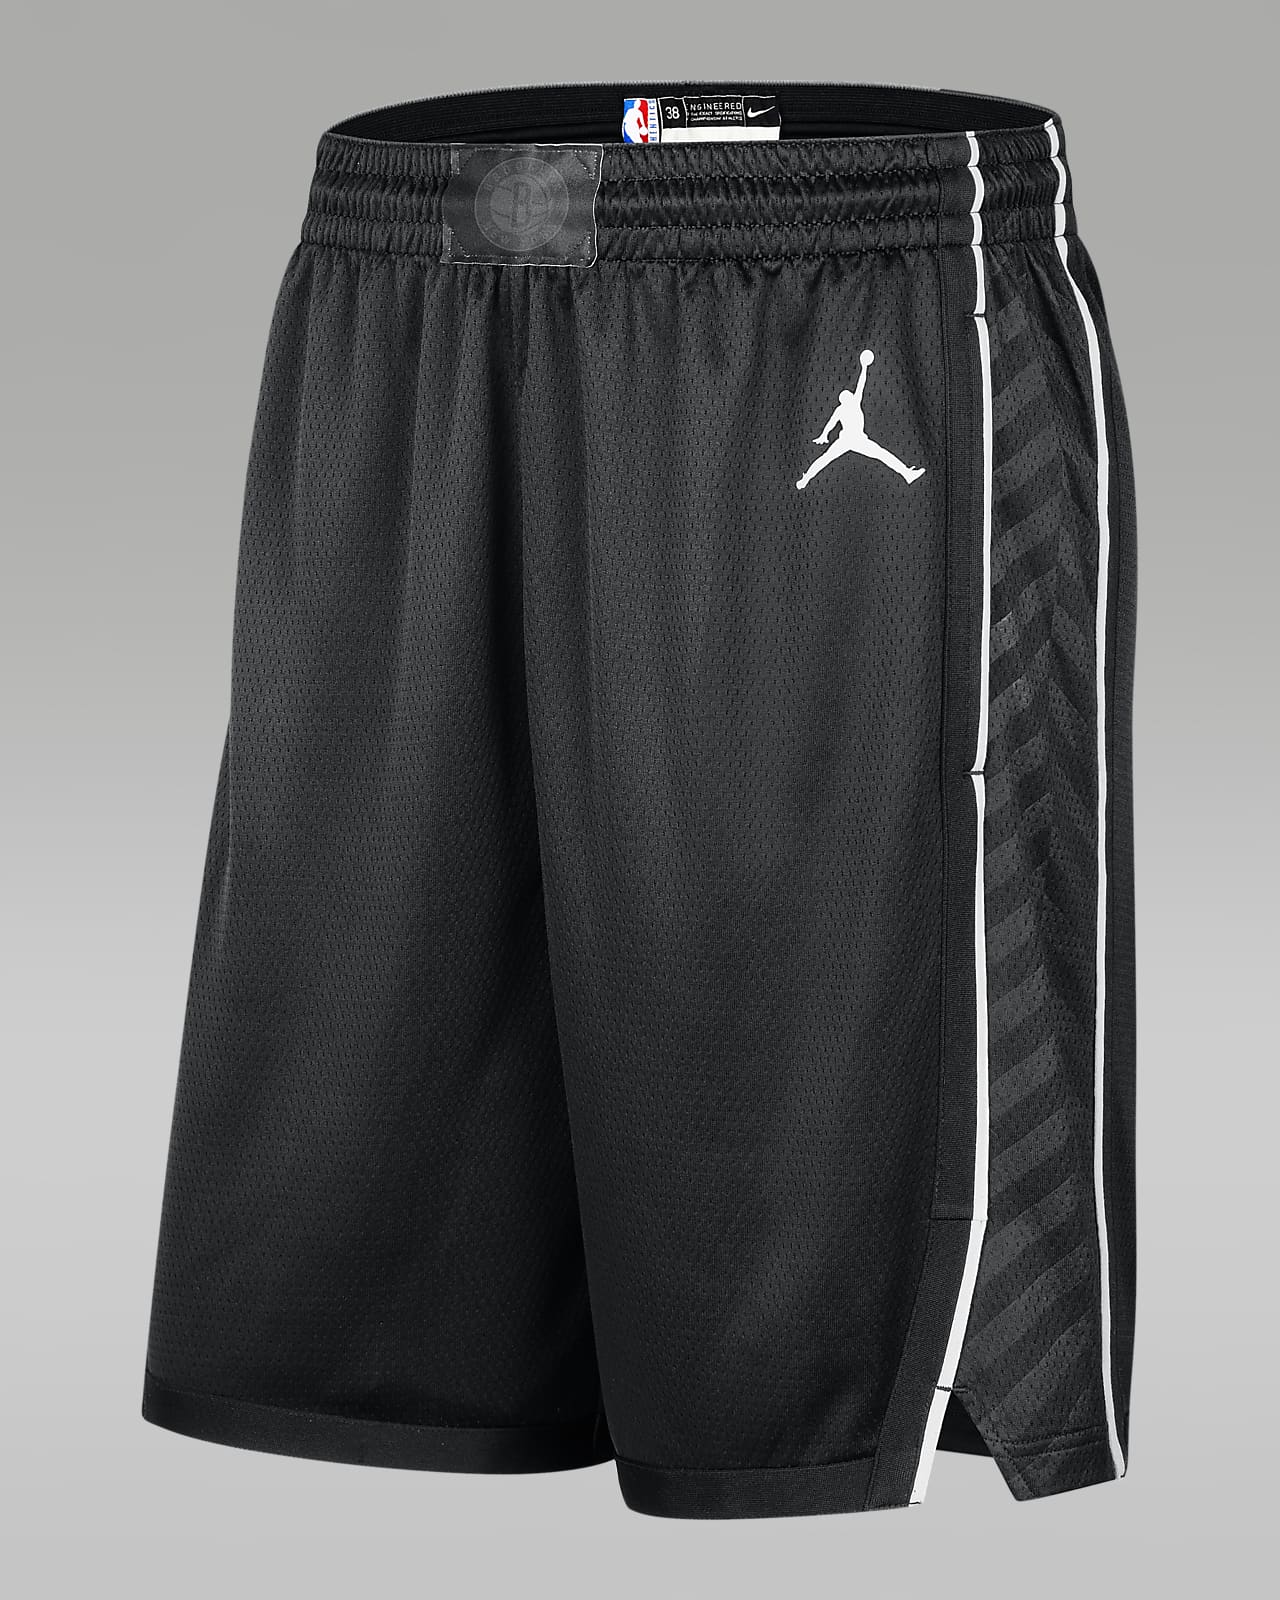 Official NBA Nike Mens Shorts, NBA Basketball Shorts, Gym Shorts, Compression  Shorts